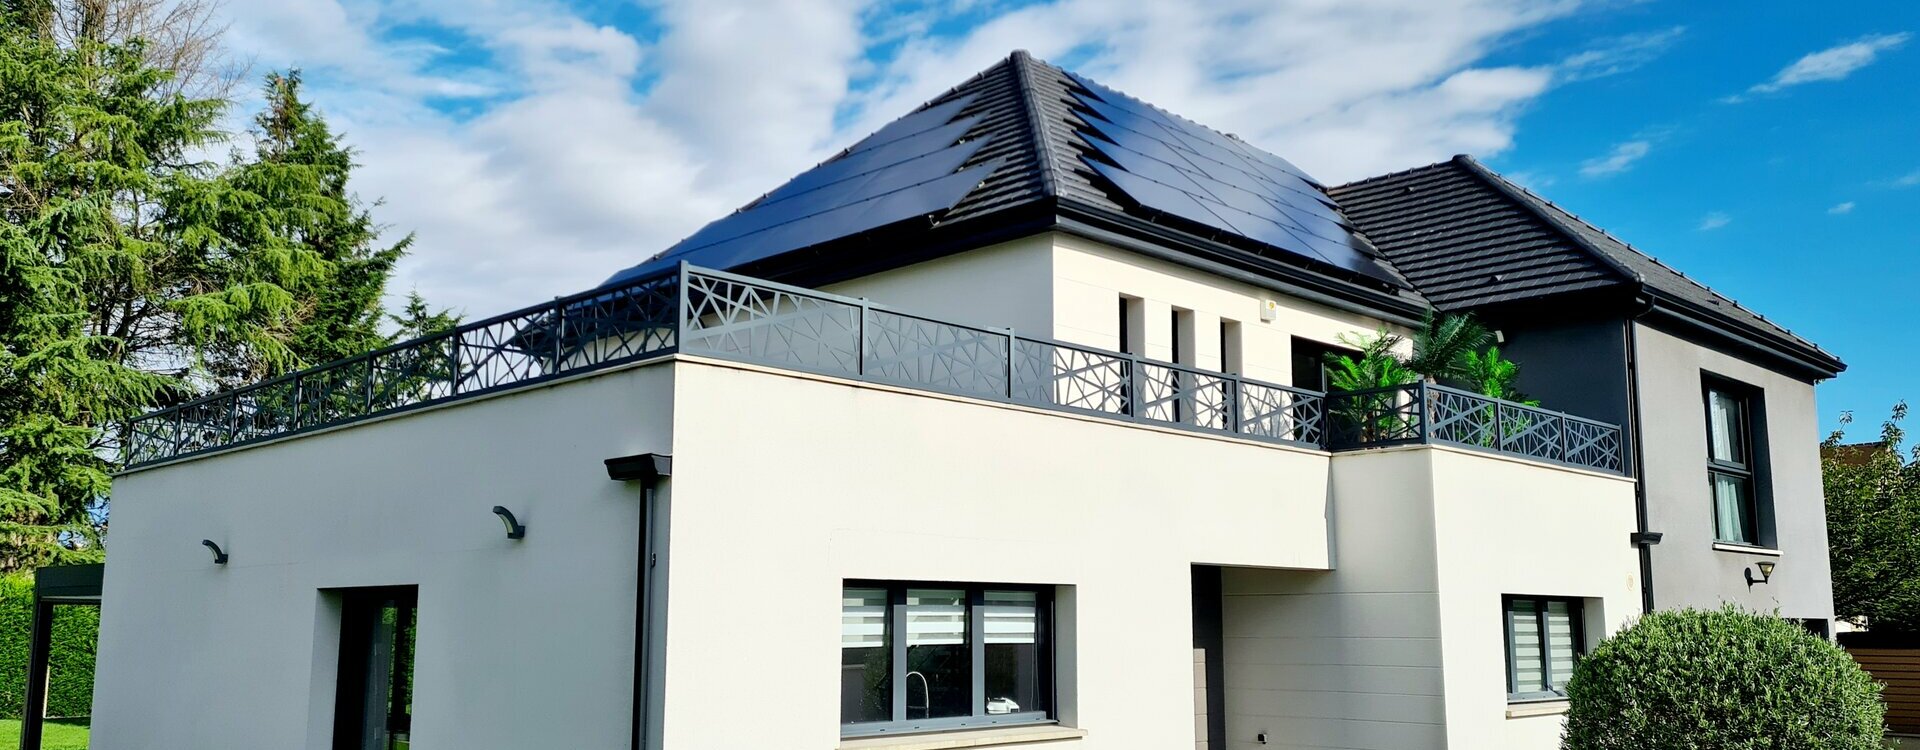 Solar Solution : Mise en place des modules photovoltaïque en toitures (28) Poisvilliers Eure-et-Loir